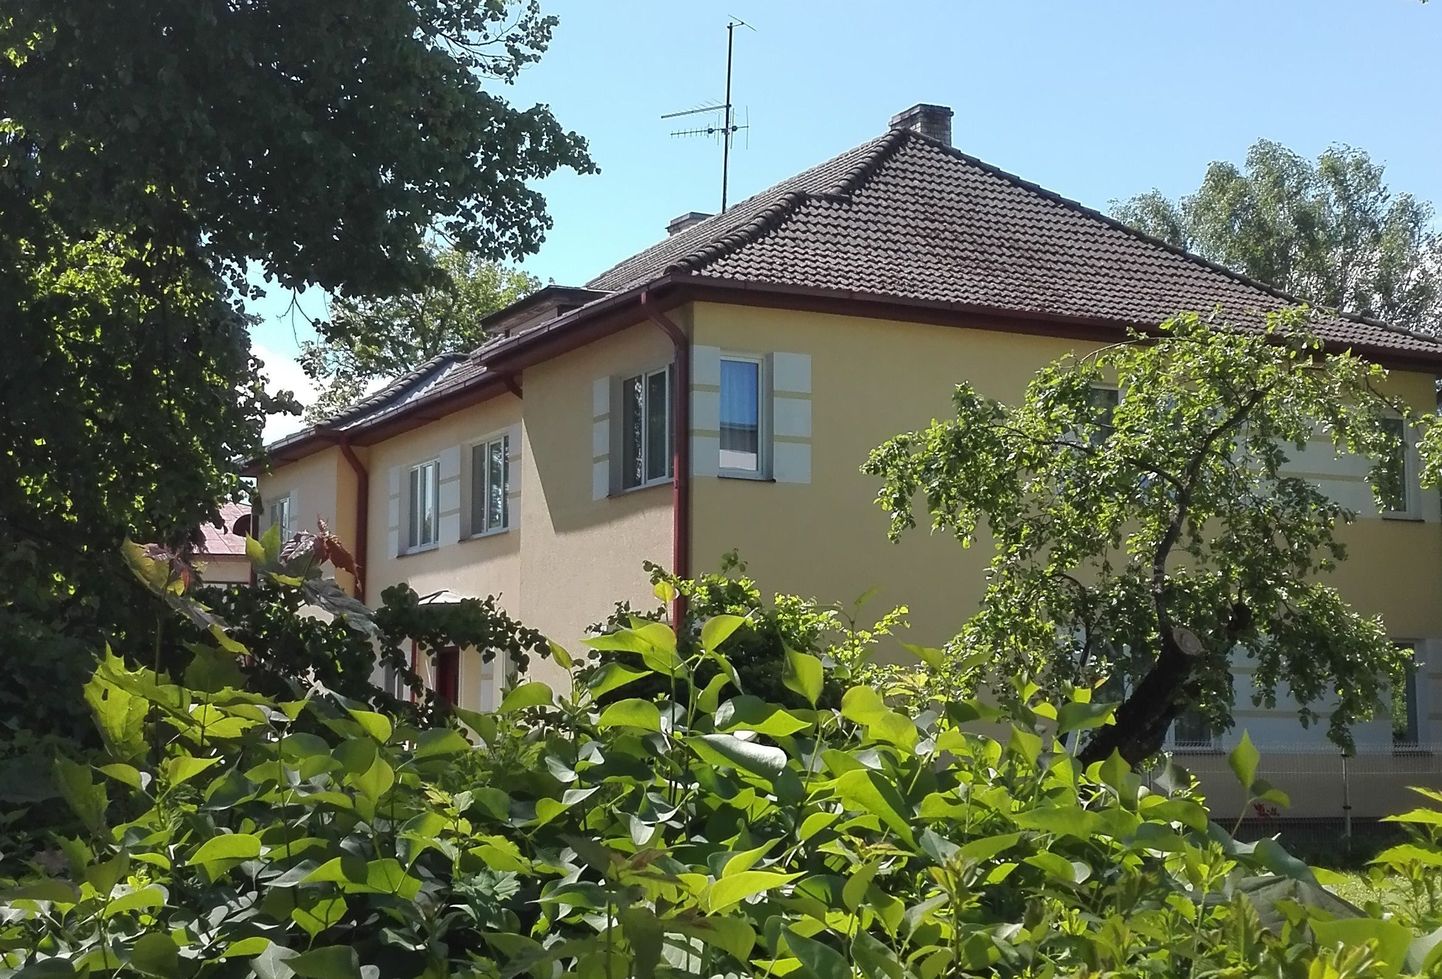 На этом здании в Тарту флаг официально не вывешен. Однако его можно заметить в окне одного из жильцов.